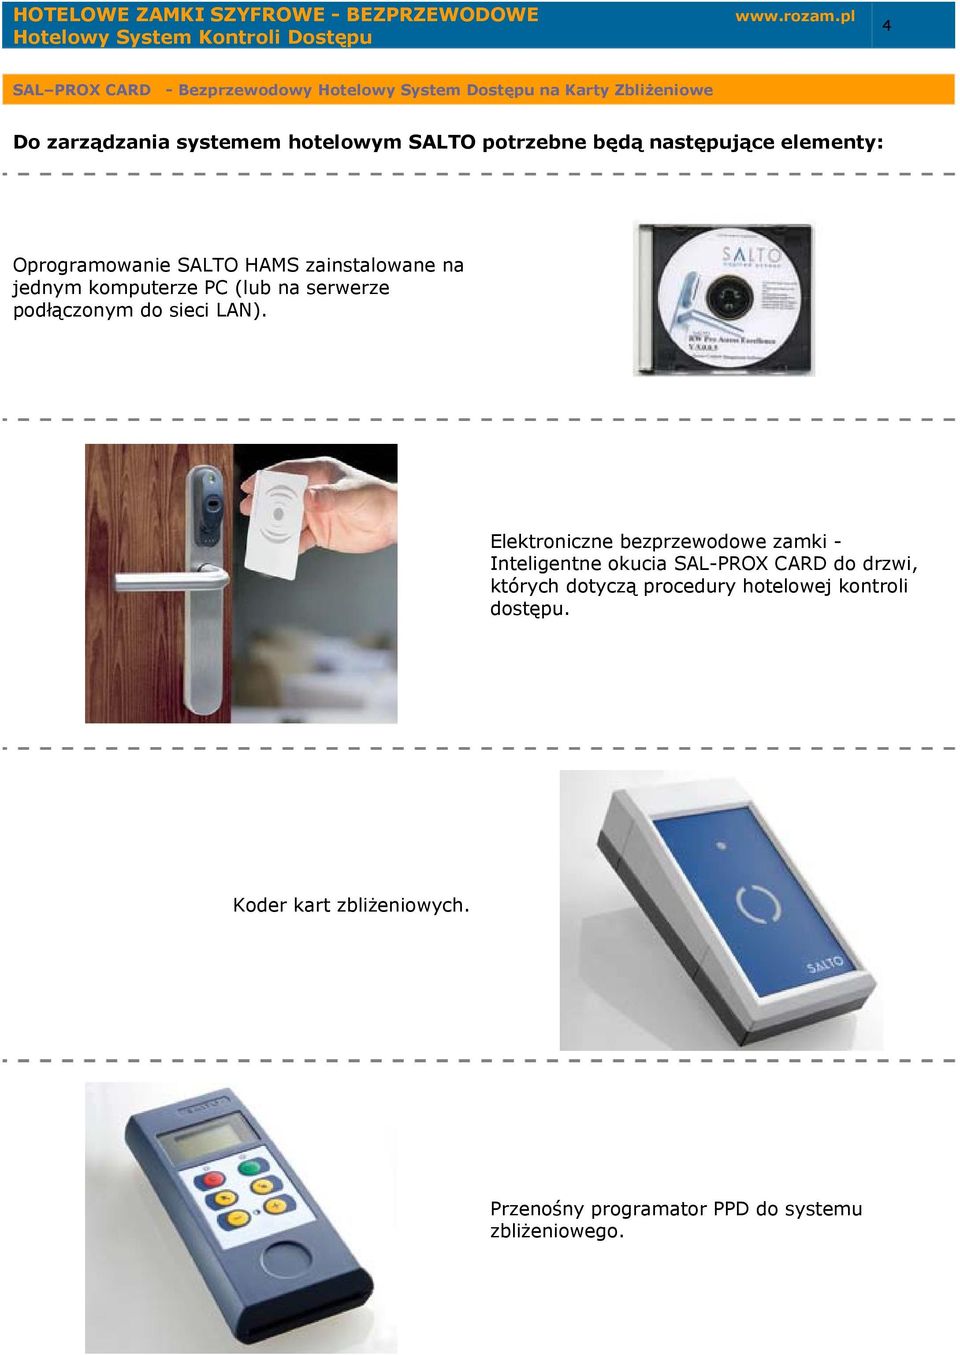 Elektroniczne bezprzewodowe zamki - Inteligentne okucia SAL-PROX CARD do drzwi, których dotyczą